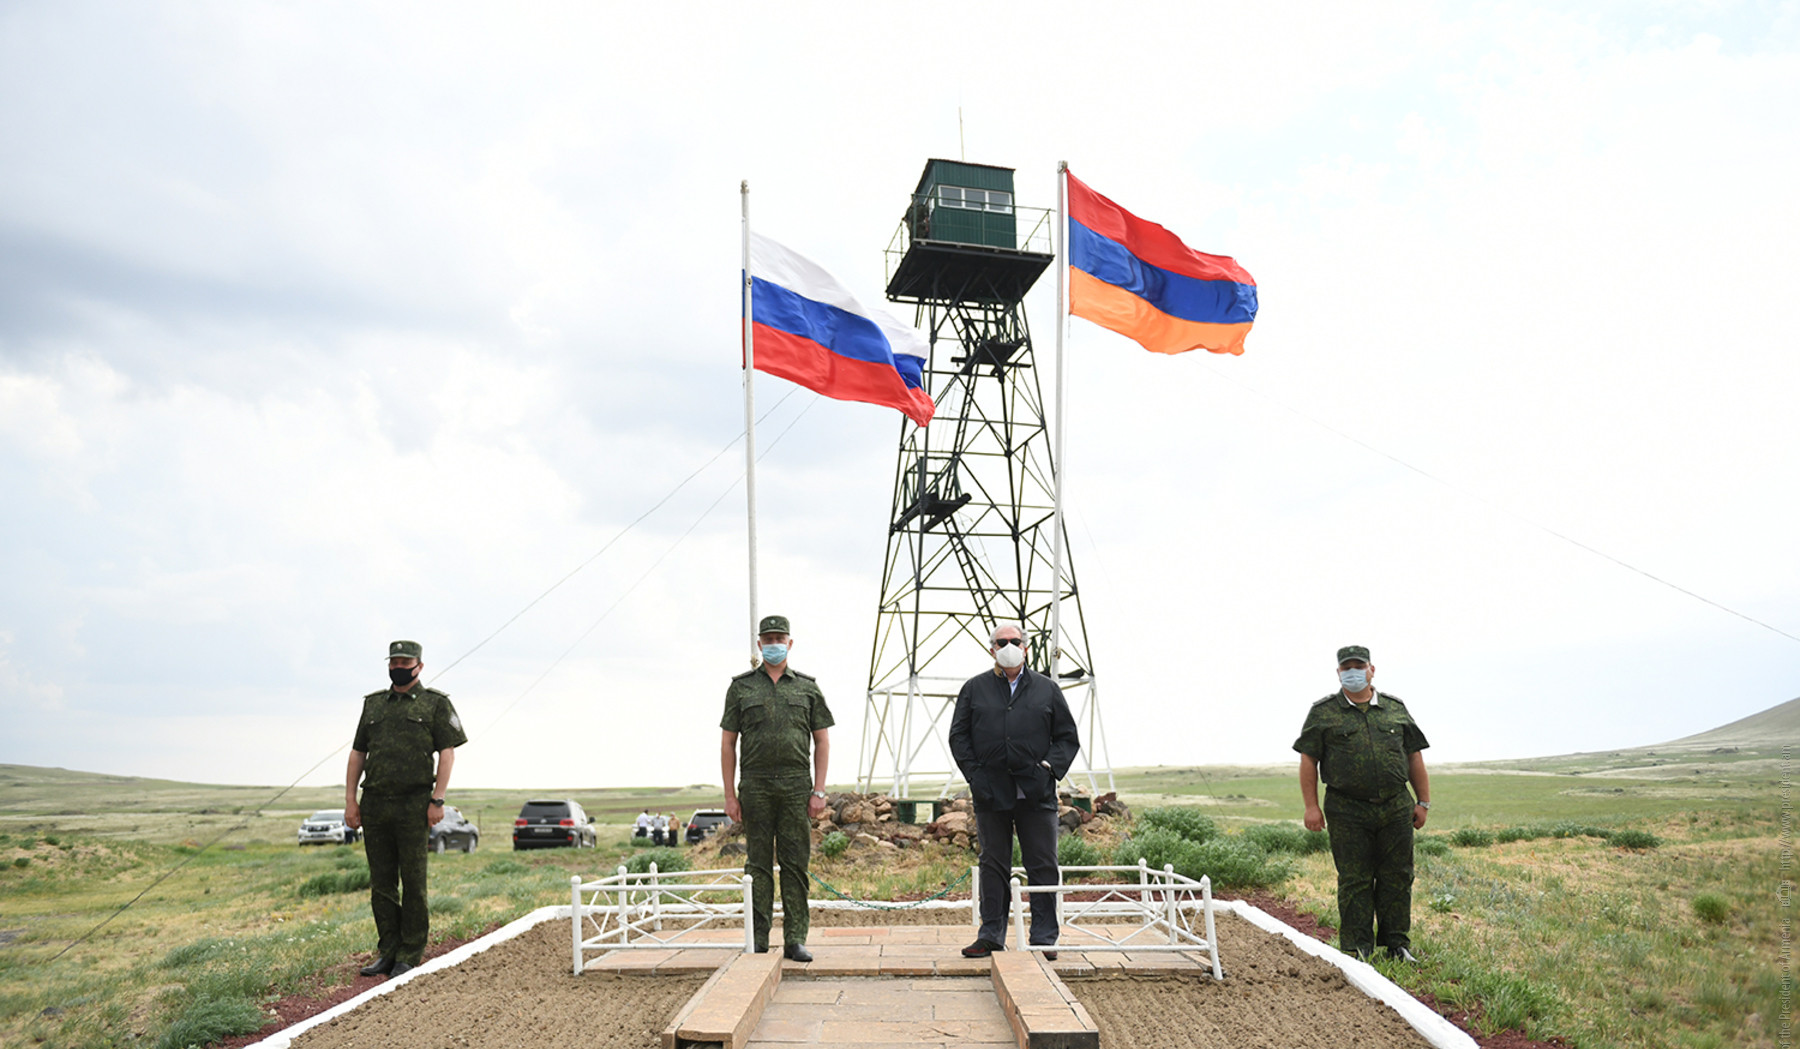 Հայ-իրանական պետական սահմանի հատվածում ստեղծվել է լարված օպերատիվ իրավիճակ․ Ռուսաստանի ԱԴԾ սահմանապահ վարչություն